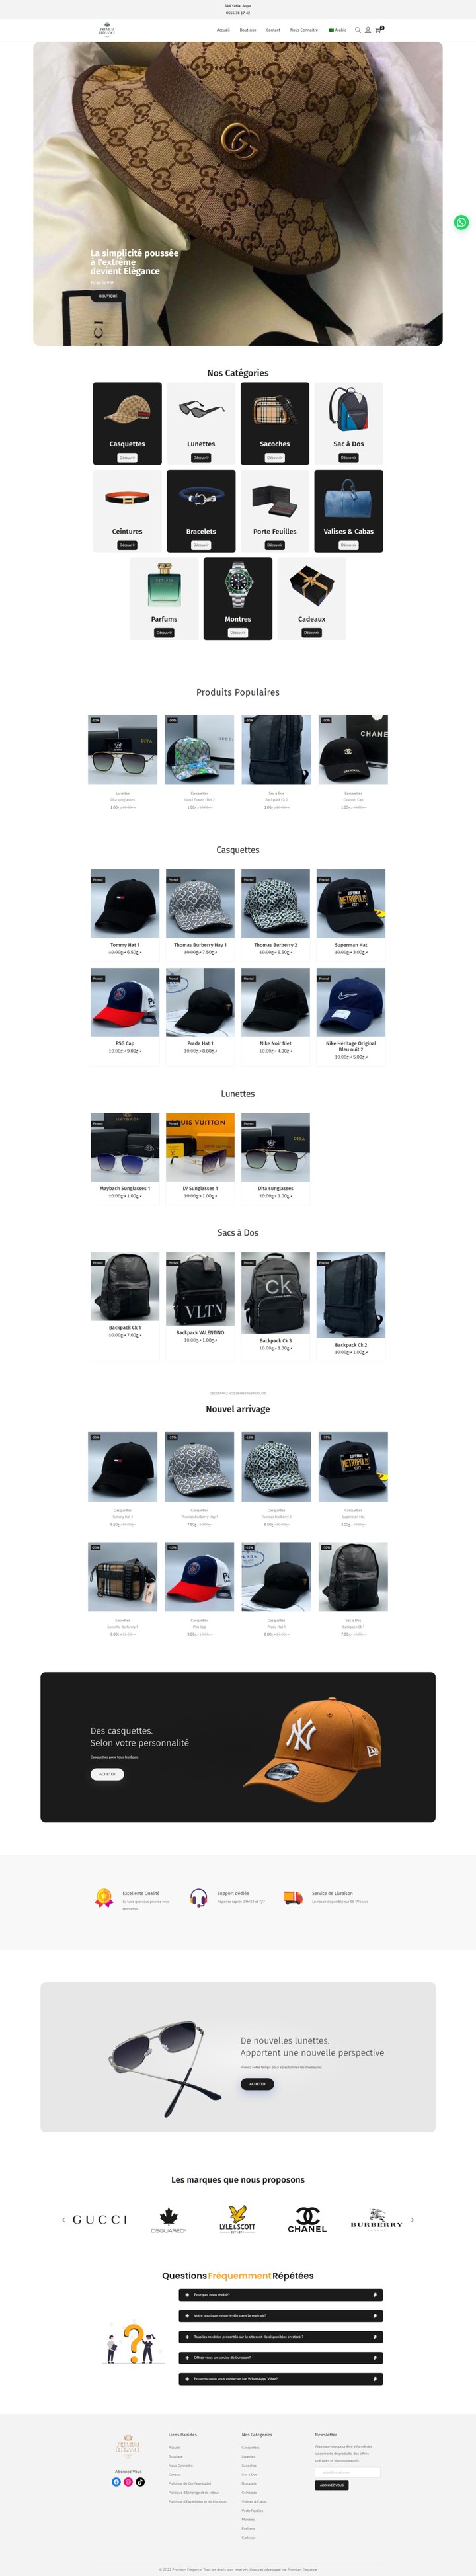 متجر الكتروني احترافي لبيع القبعات و الحقائب و مختلف الأكسسوارات، متجاوب مع جميع احجام الشاشات